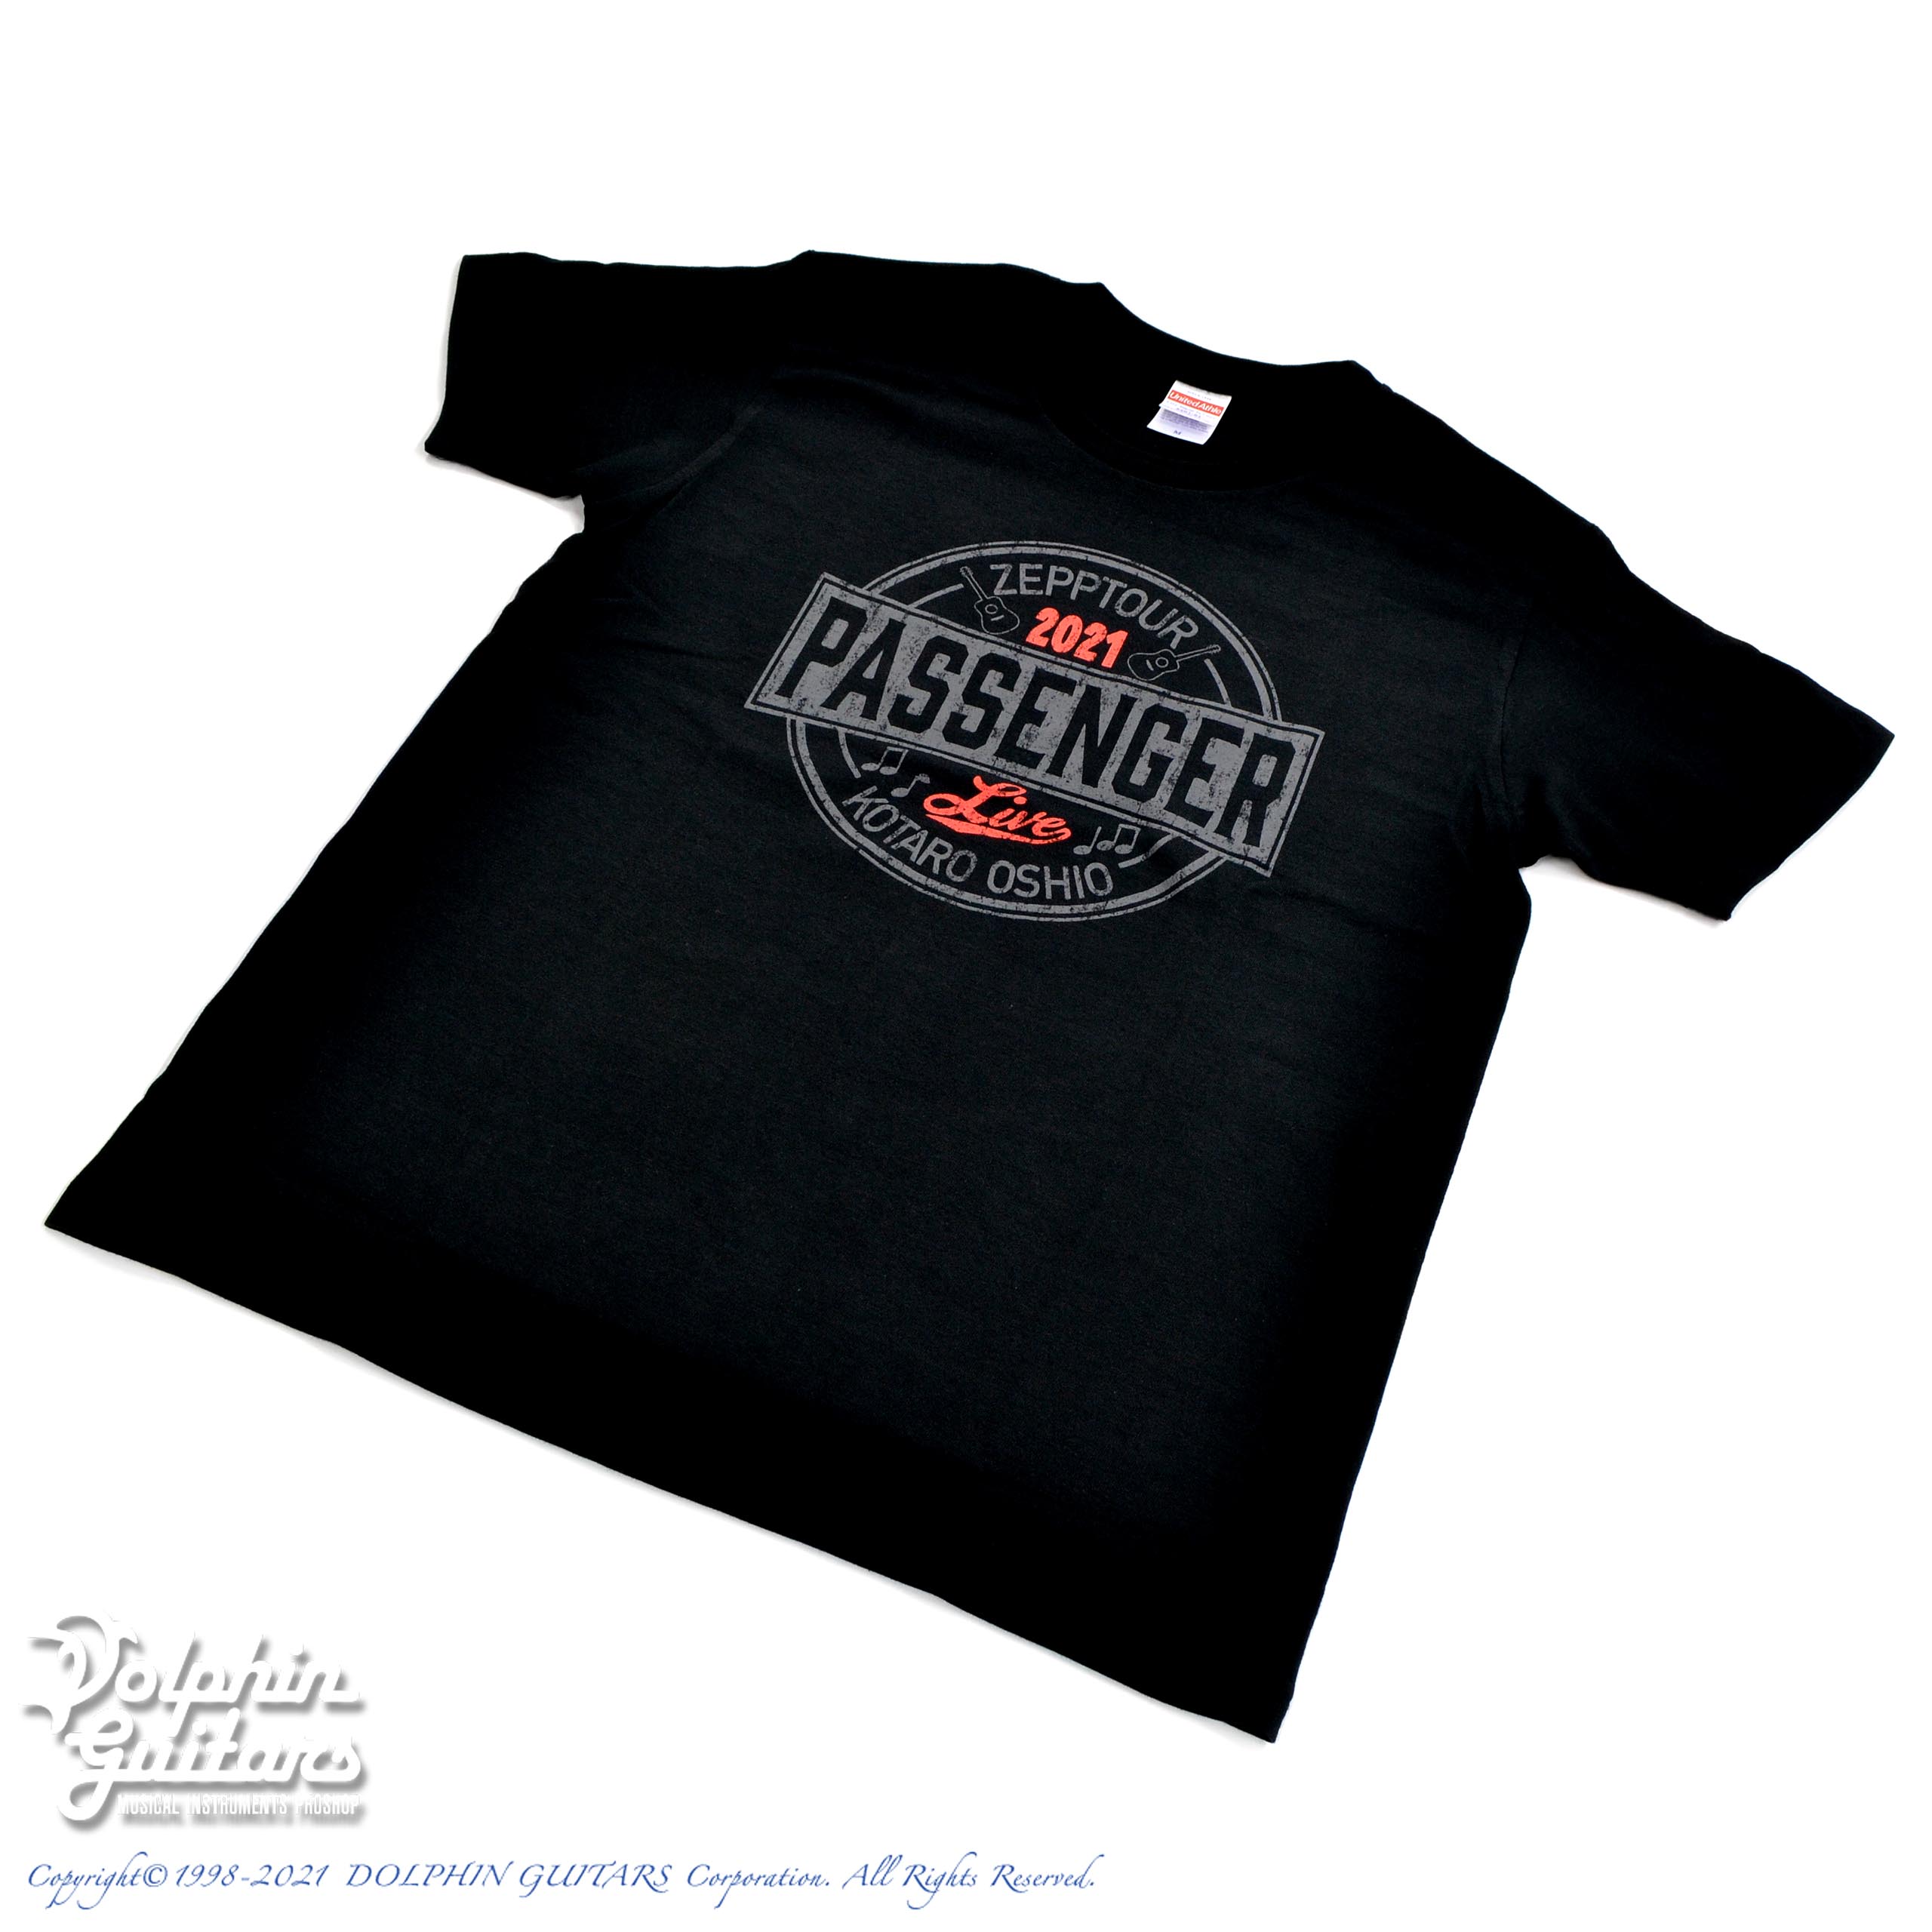 押尾コータローZepp Tour 2021 PASSENGER オフィシャルツアーグッズ・Tシャツ